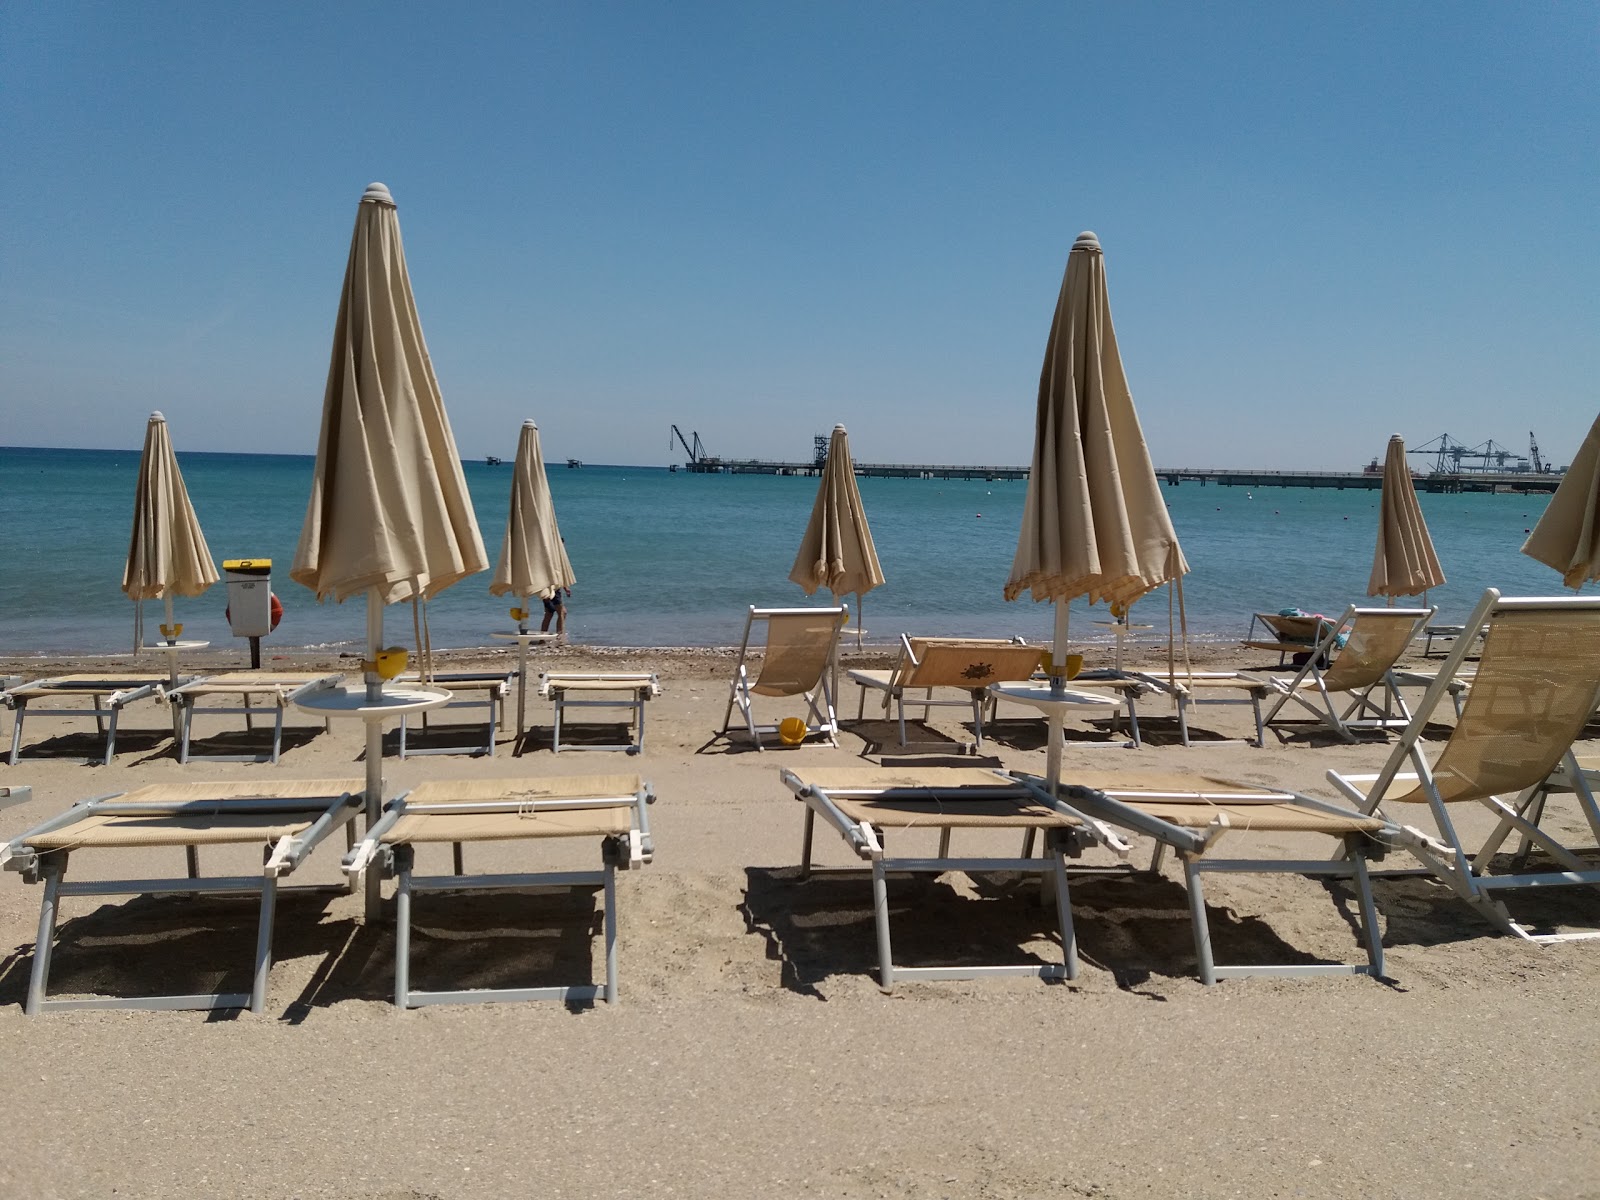 Foto de Spiaggia di Vado Ligure área de complejo turístico de playa